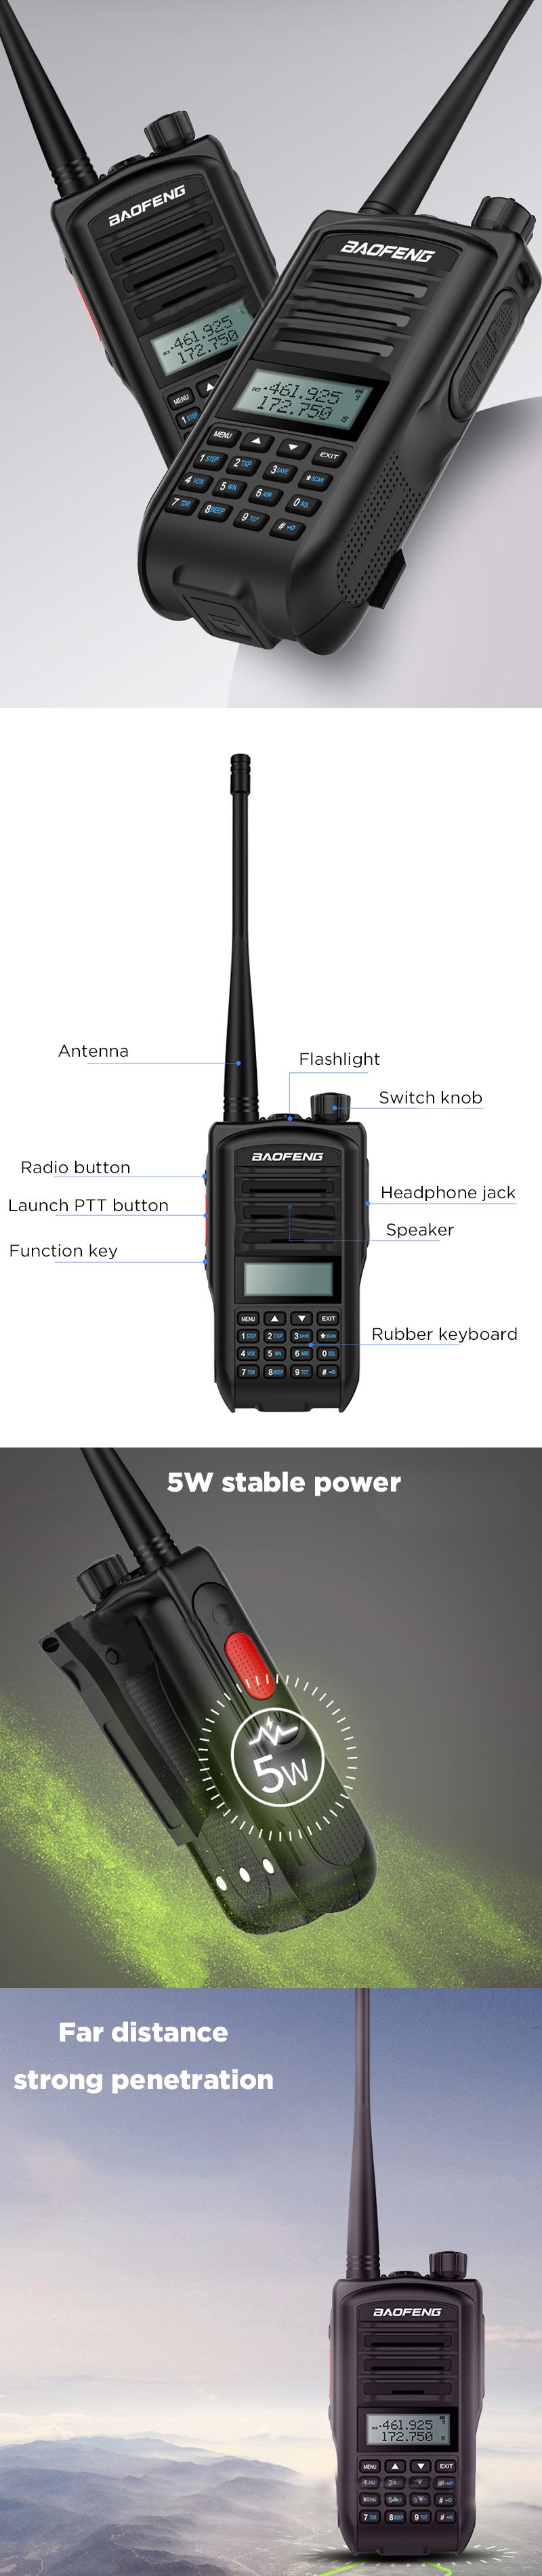 BAOFENG-UV-7R-5W-1800mAh-128-Channels-CTCSSDCS-UV-Dual-Band-Handheld-Radio-Walkie-Talkie-Flashlight--1573424